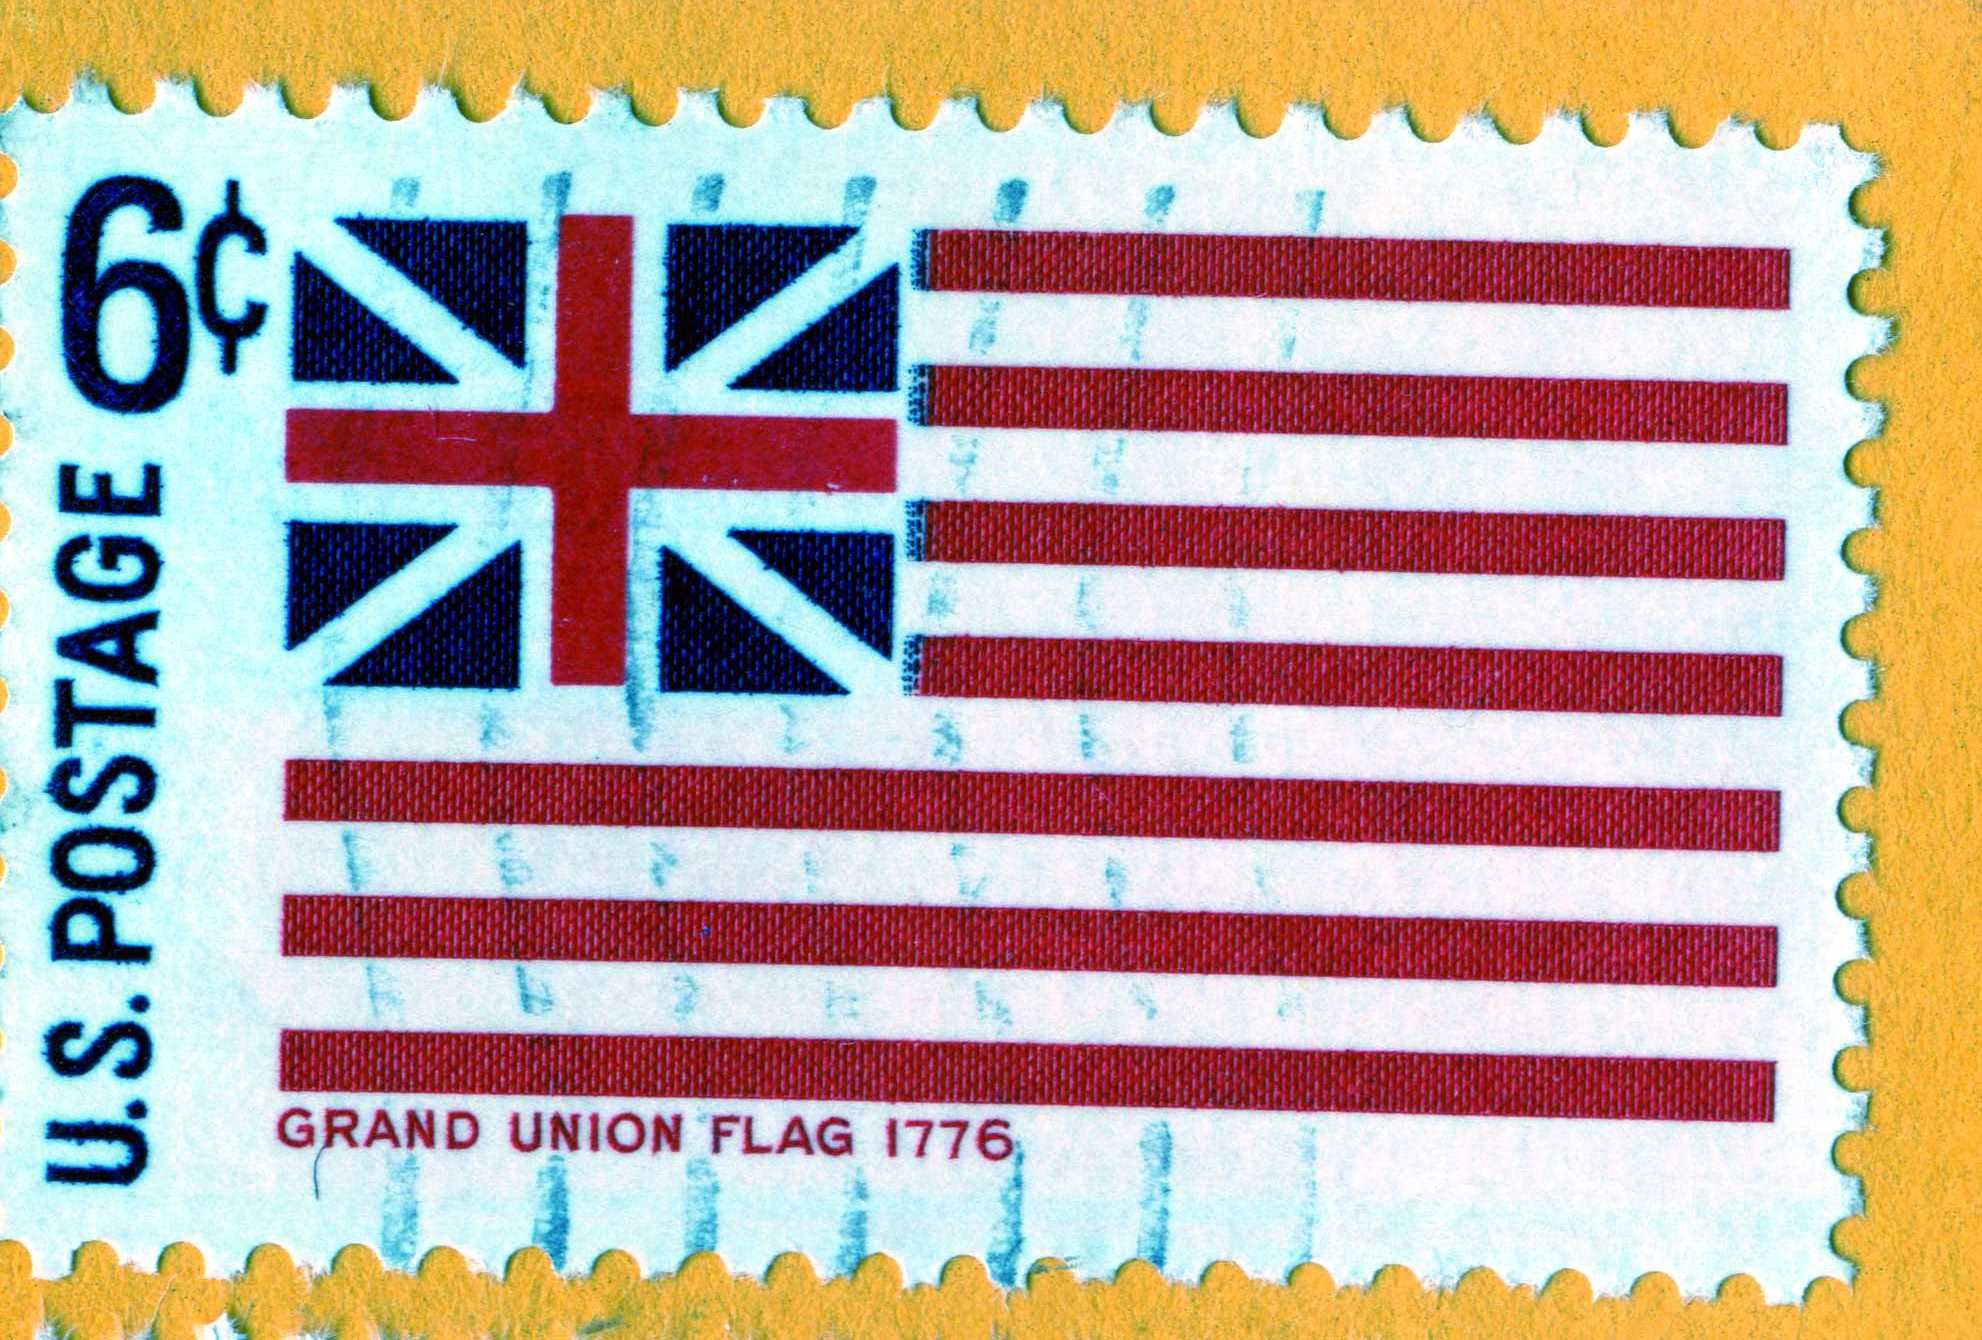 1776 Grand Union Flag, USA | Postage Stamps--USA | Pinterest | Grand ...